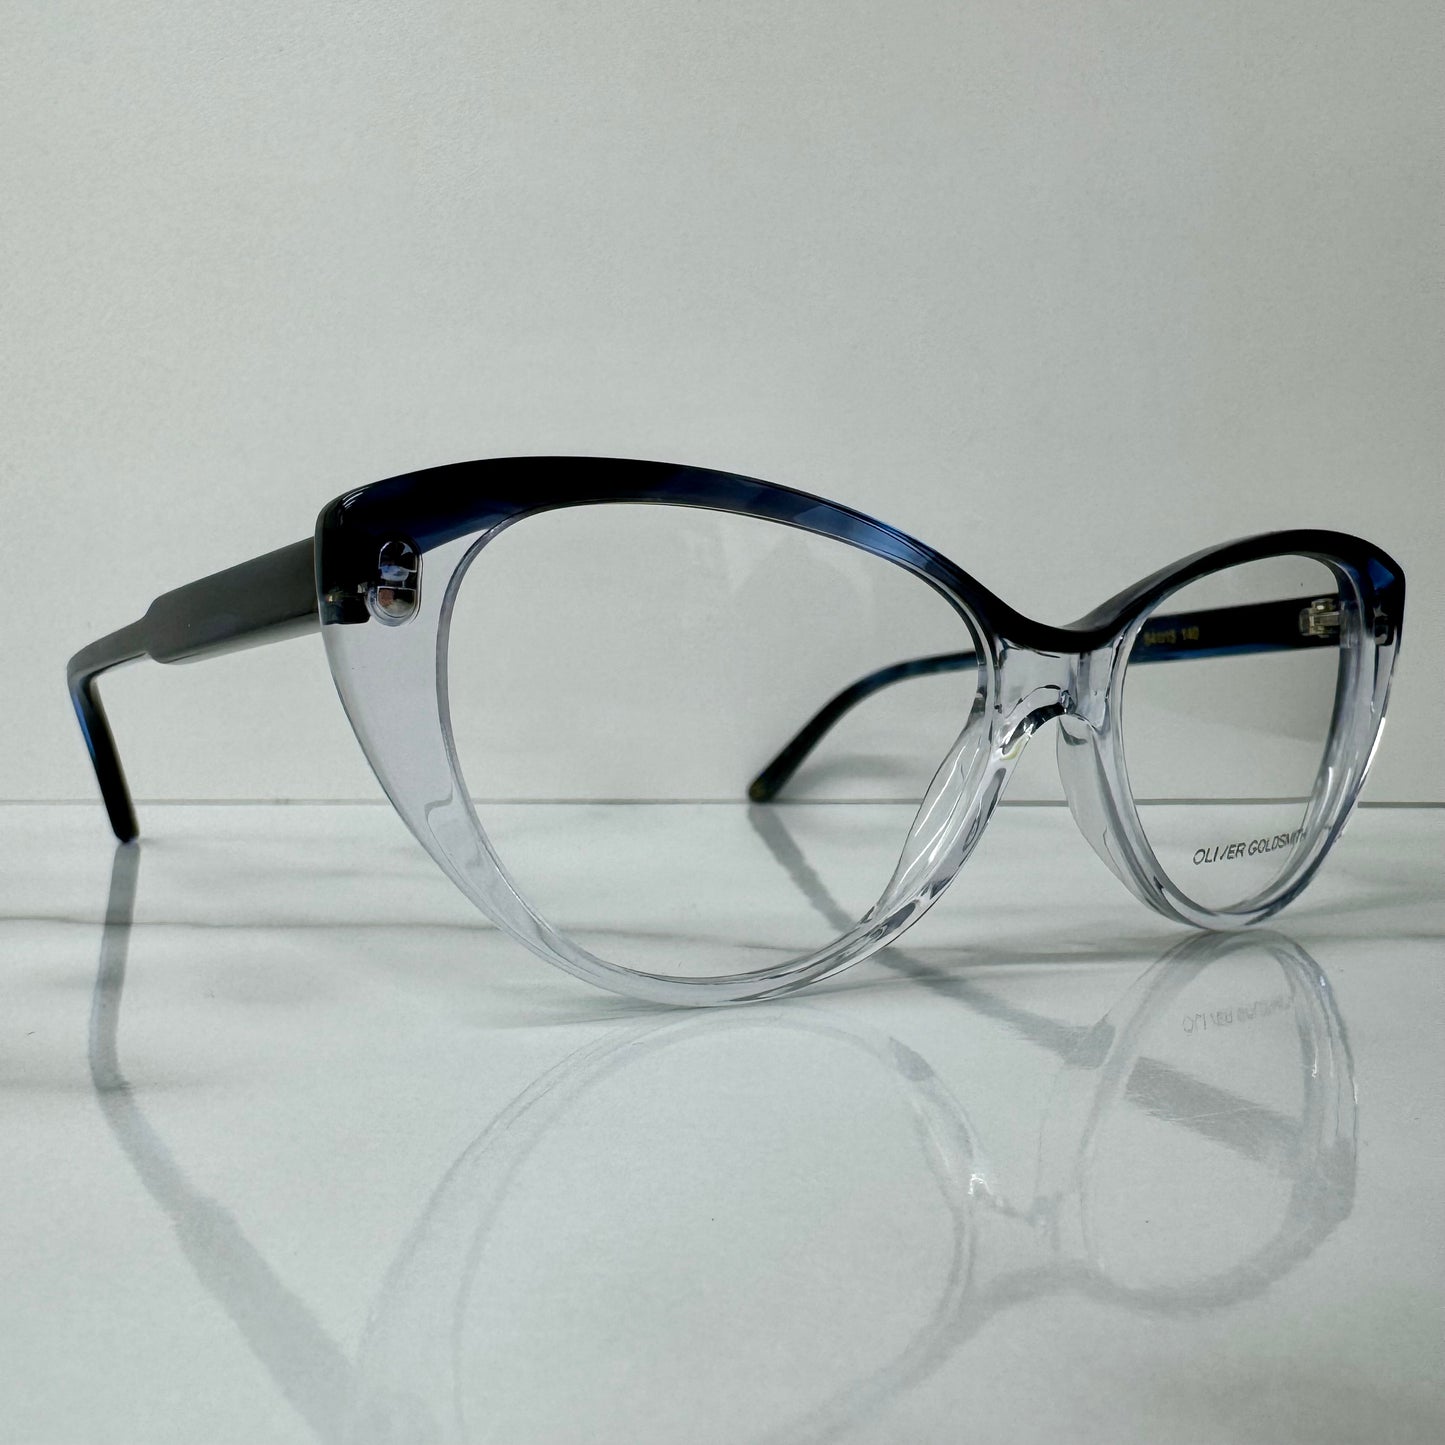 Oliver Goldsmith Glasses Frames Sammy OLI009-03 Cat Eye Blue Clear Eyeglasses